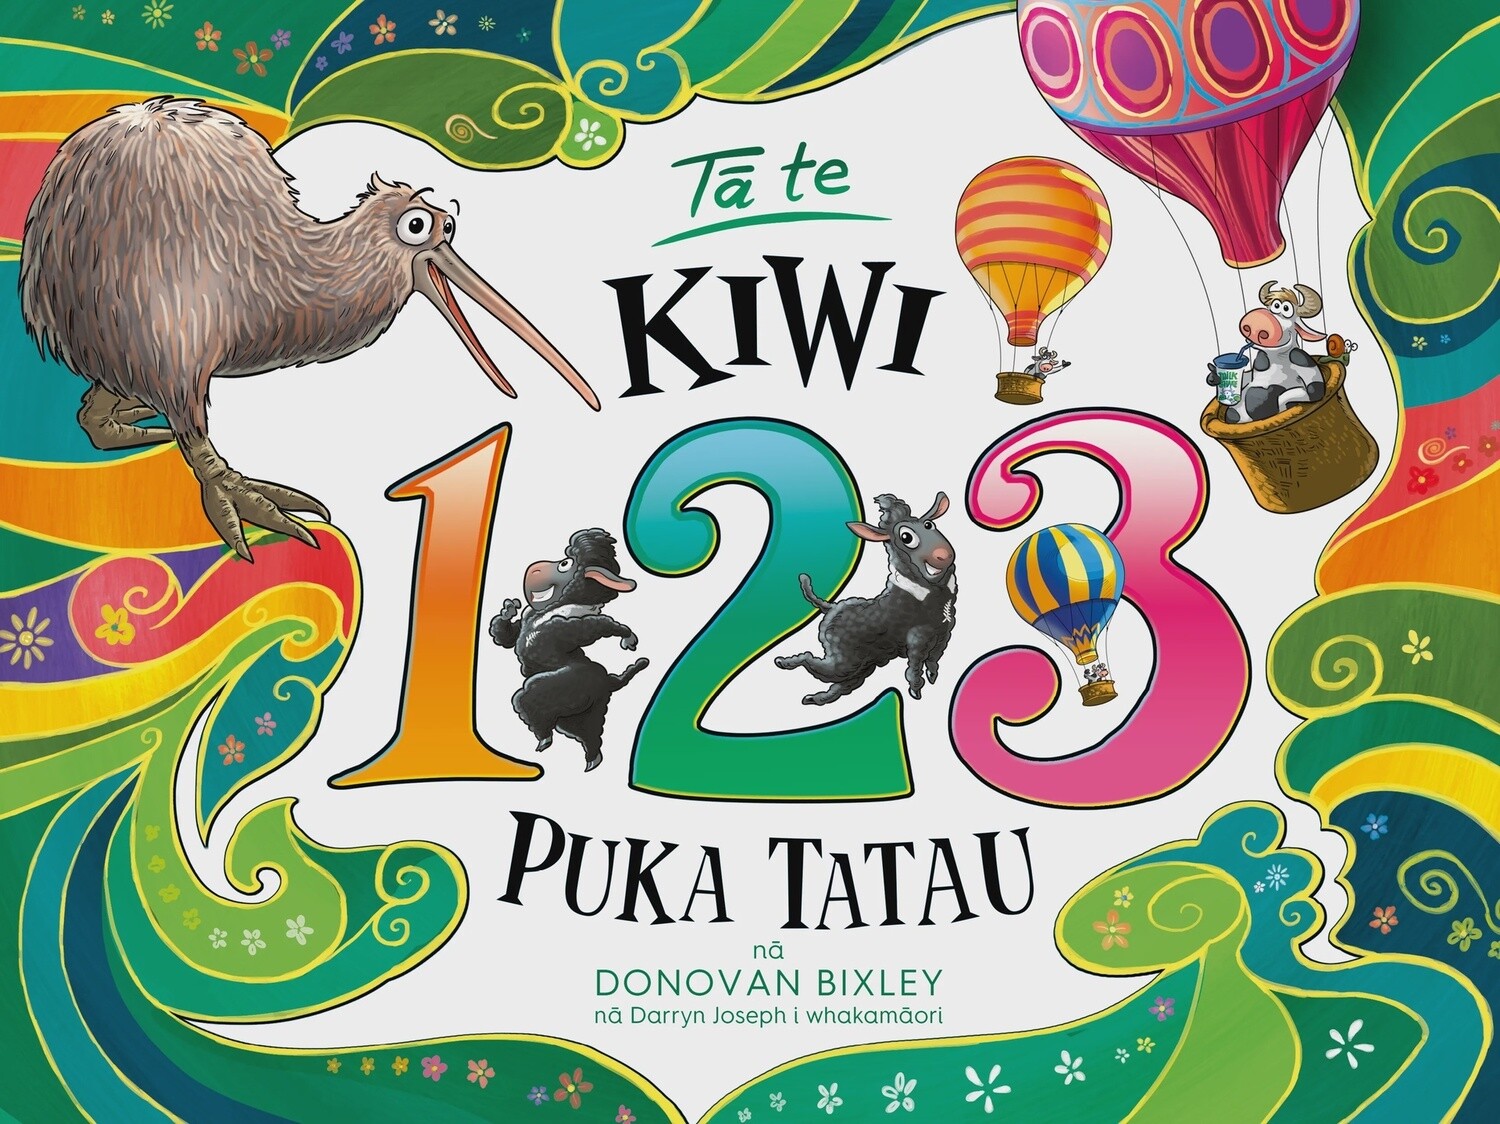 Tā te Kiwi 123 Puka Tatau